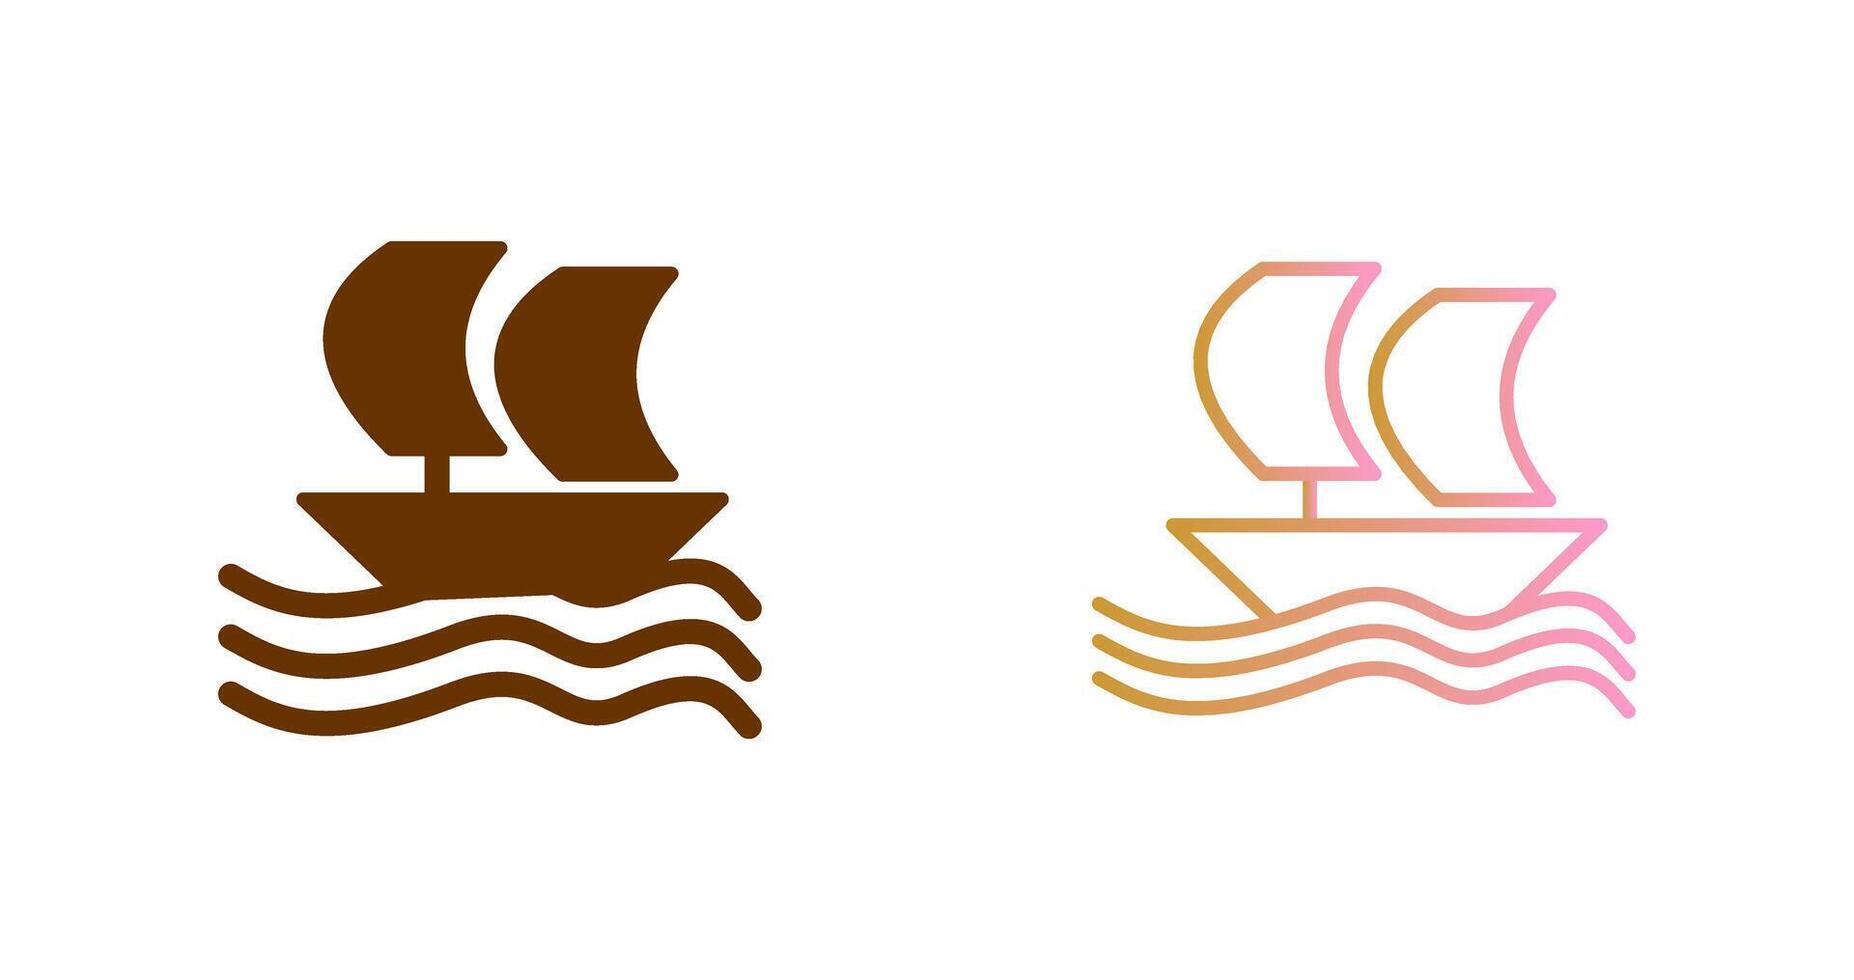 Boat Icon Design vector